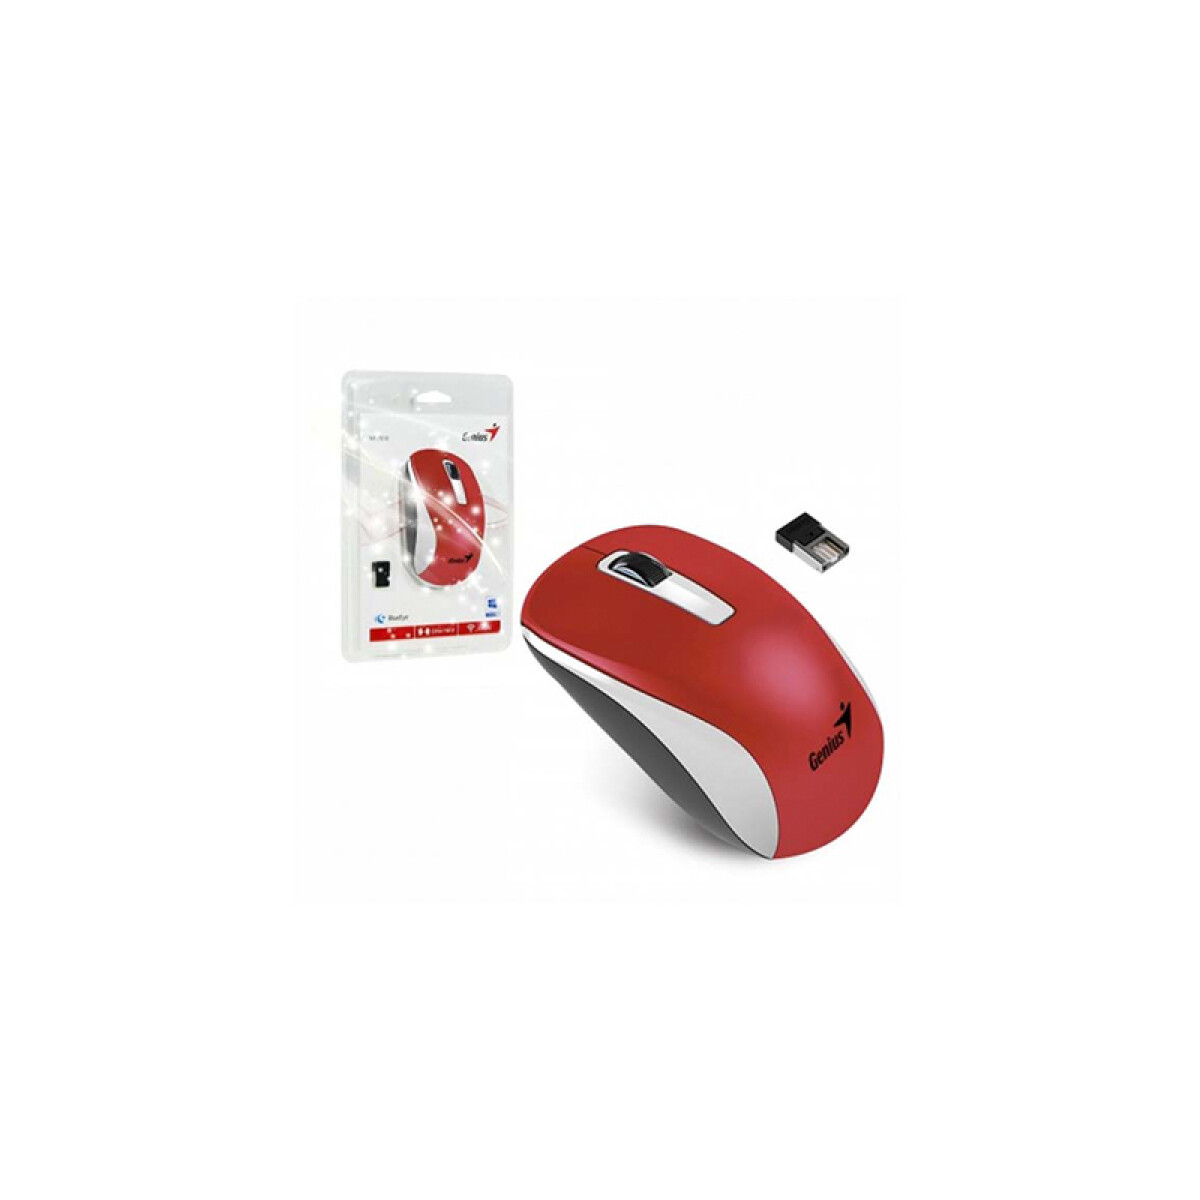 Mouse inalámbrico Genius NX-7010 USB 